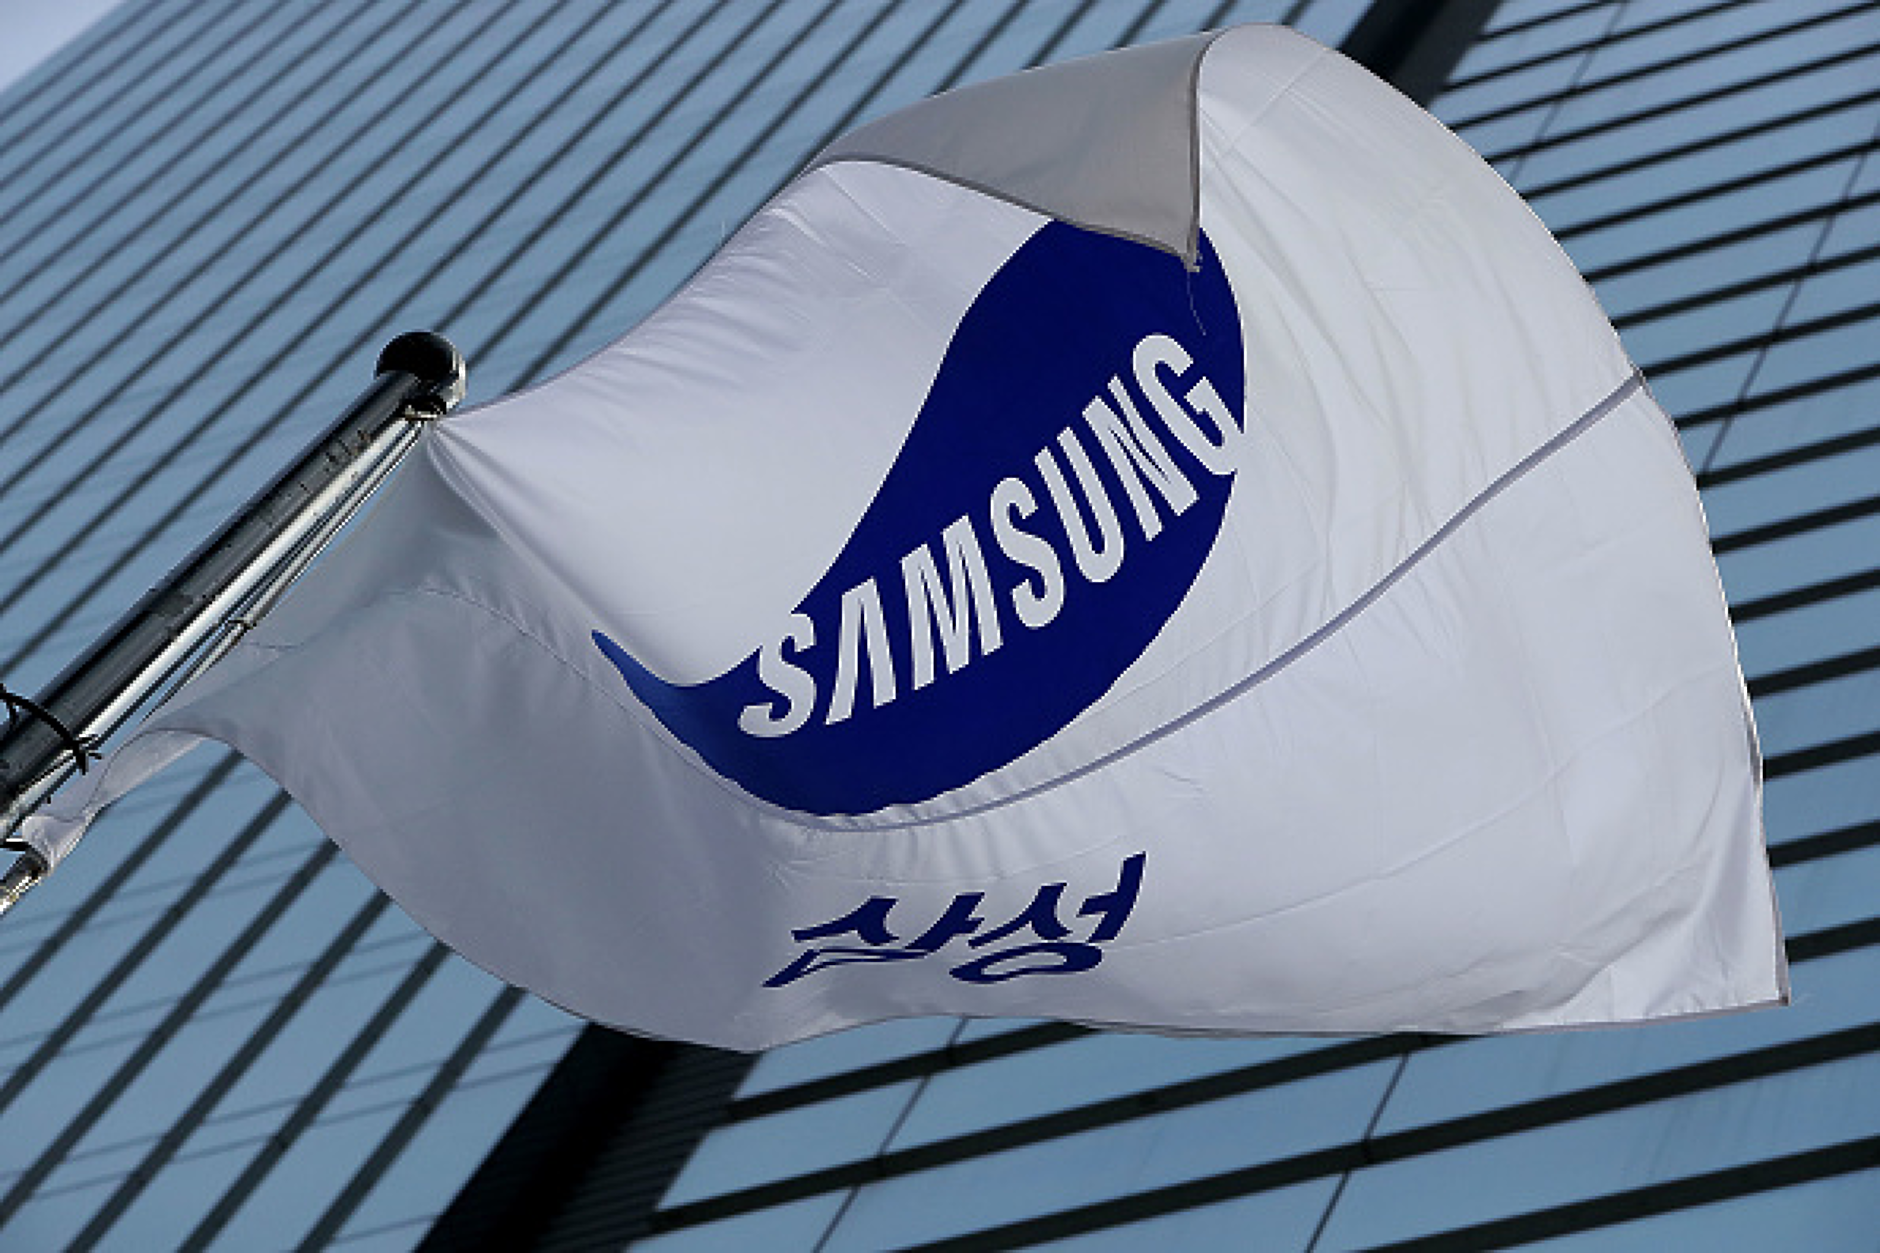 Работниците на Samsung прекъснаха първата стачка за пари в историята на компанията без споразумение